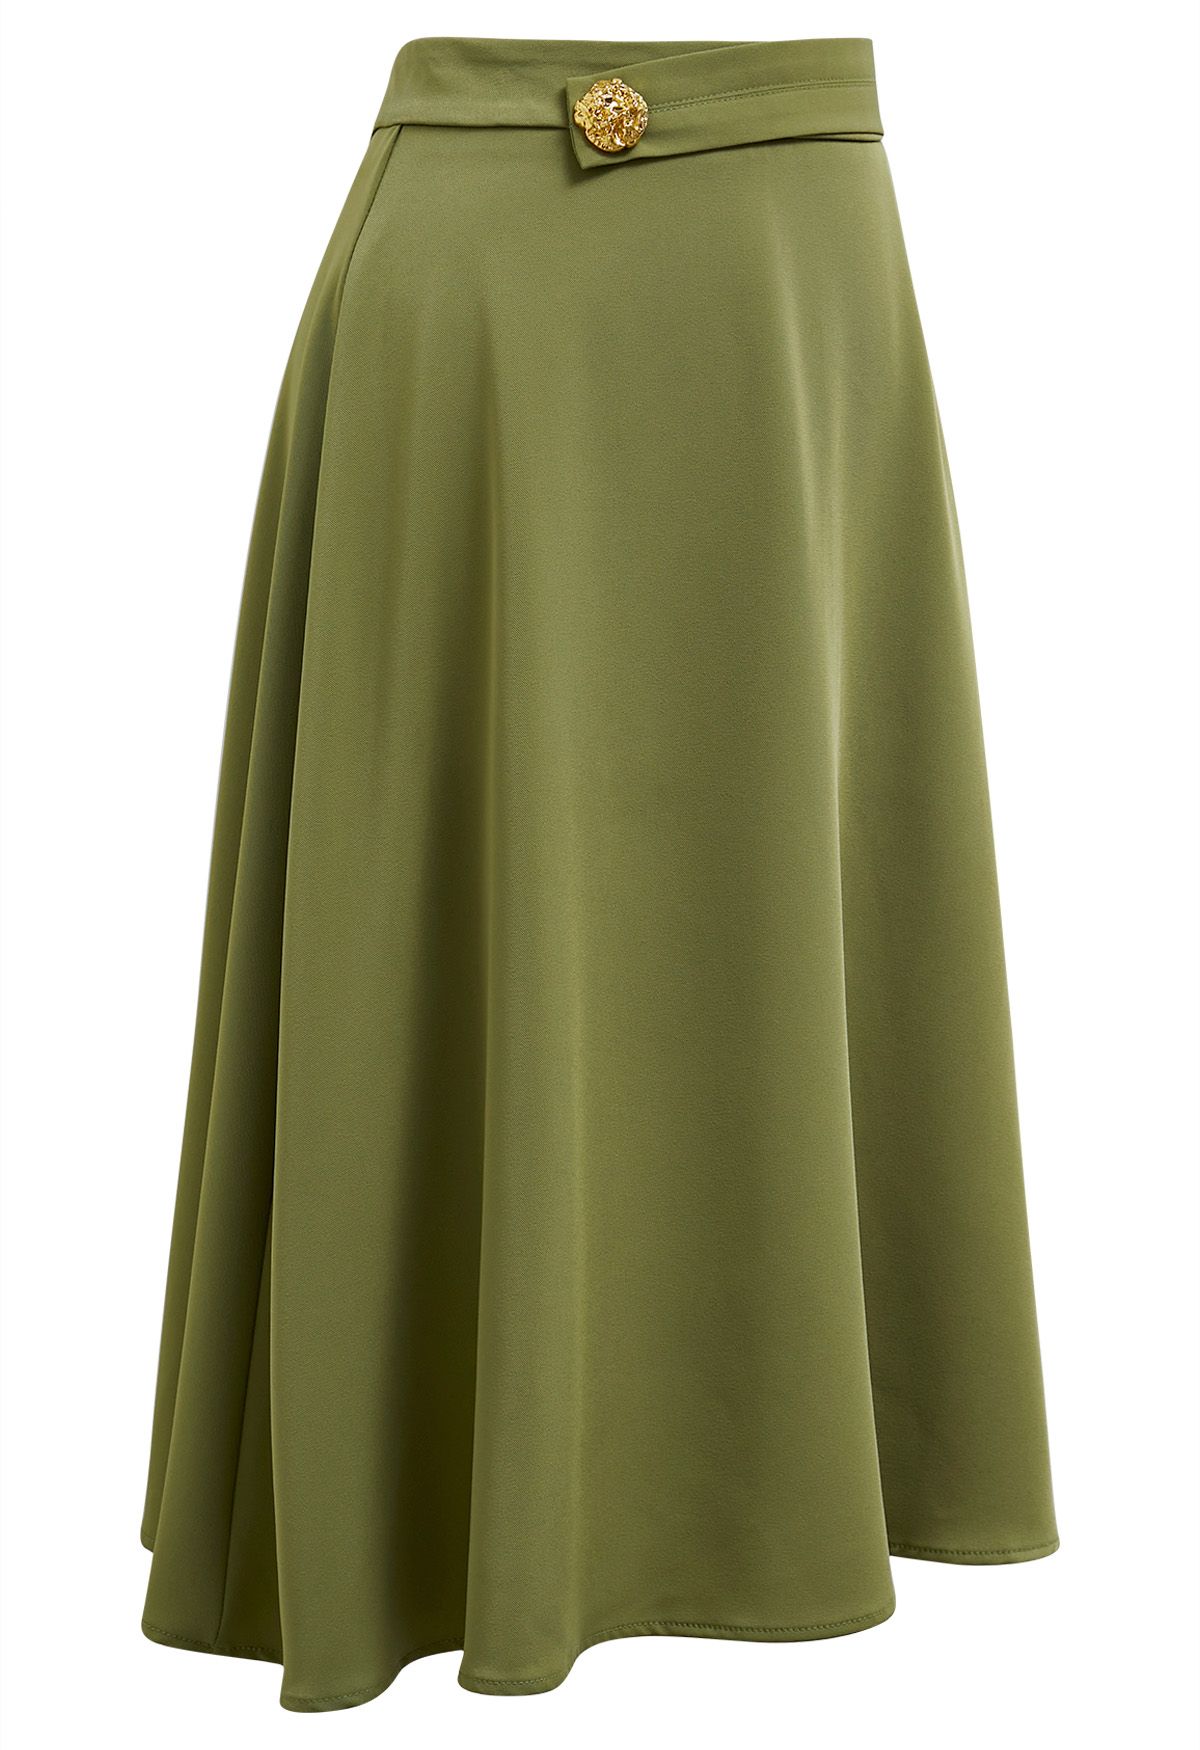 Falda midi con adornos de botones dorados en verde musgo